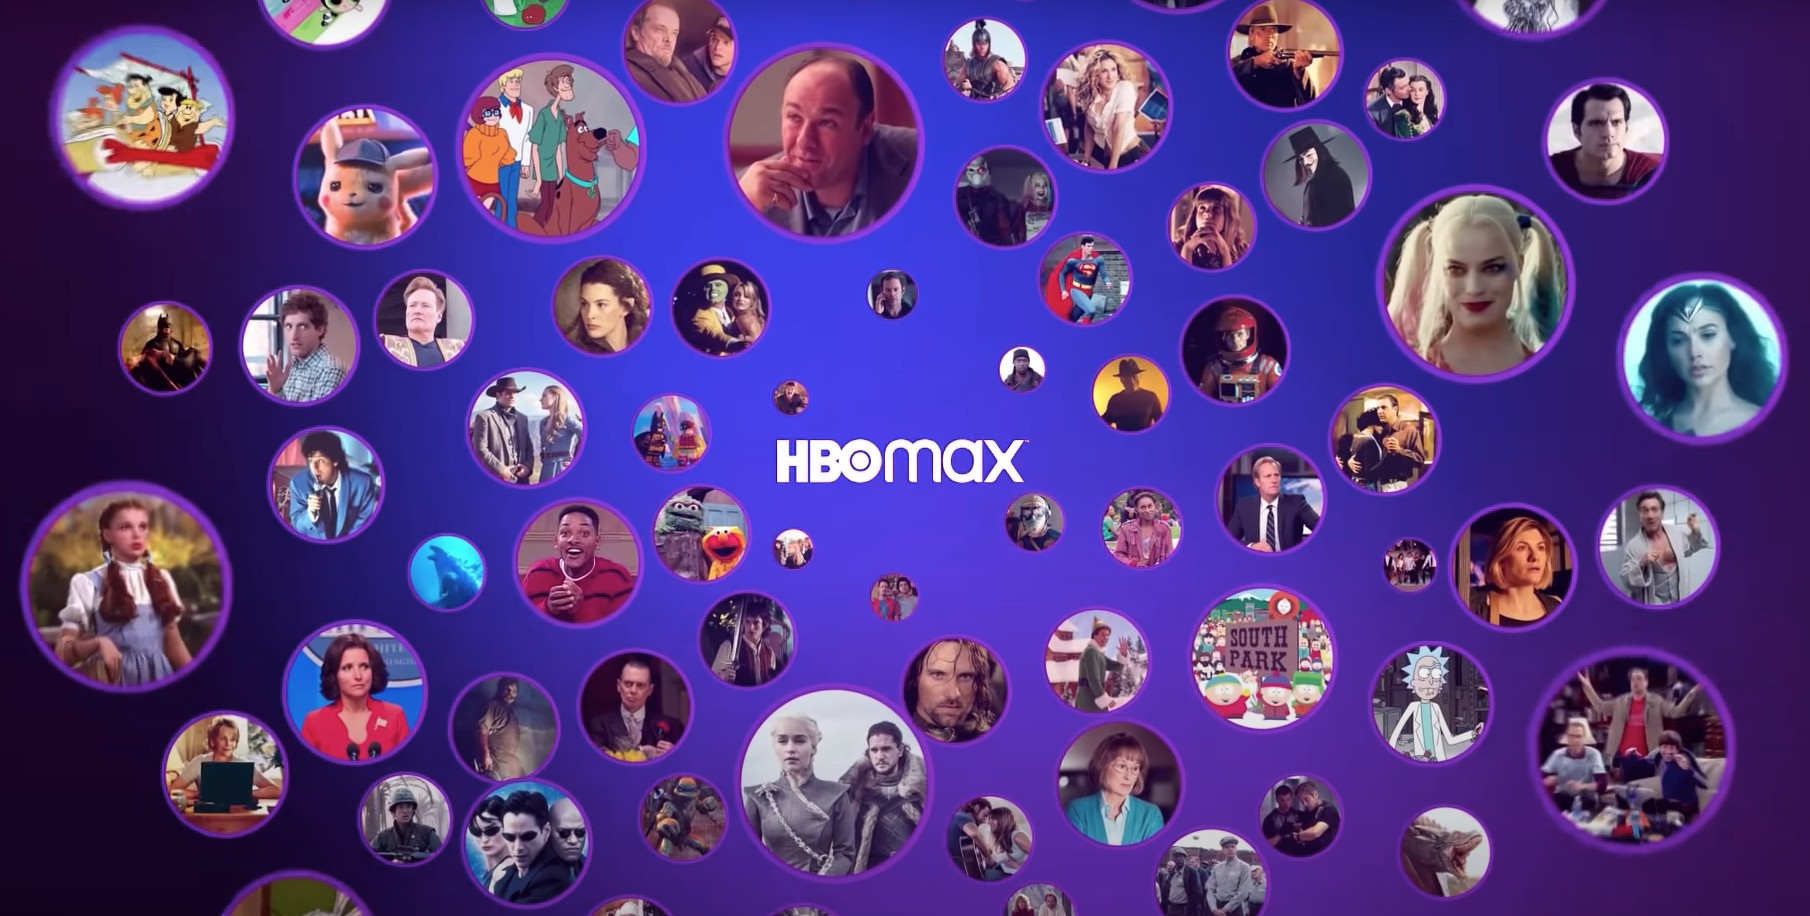 HBO Max: conheça os preços, planos, séries e filmes